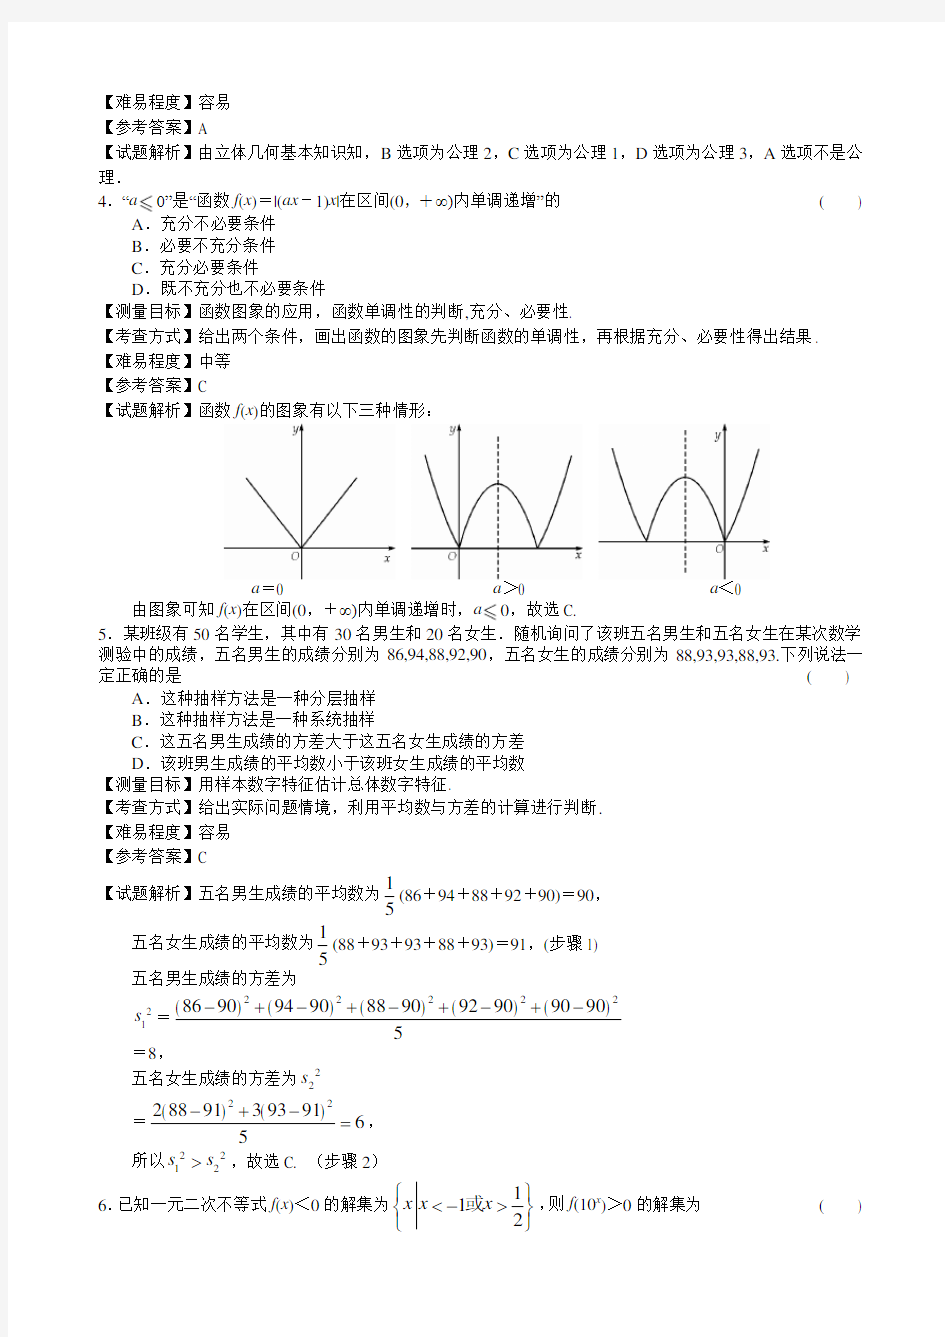 2013年安徽省理科高考数学试卷(带详解)